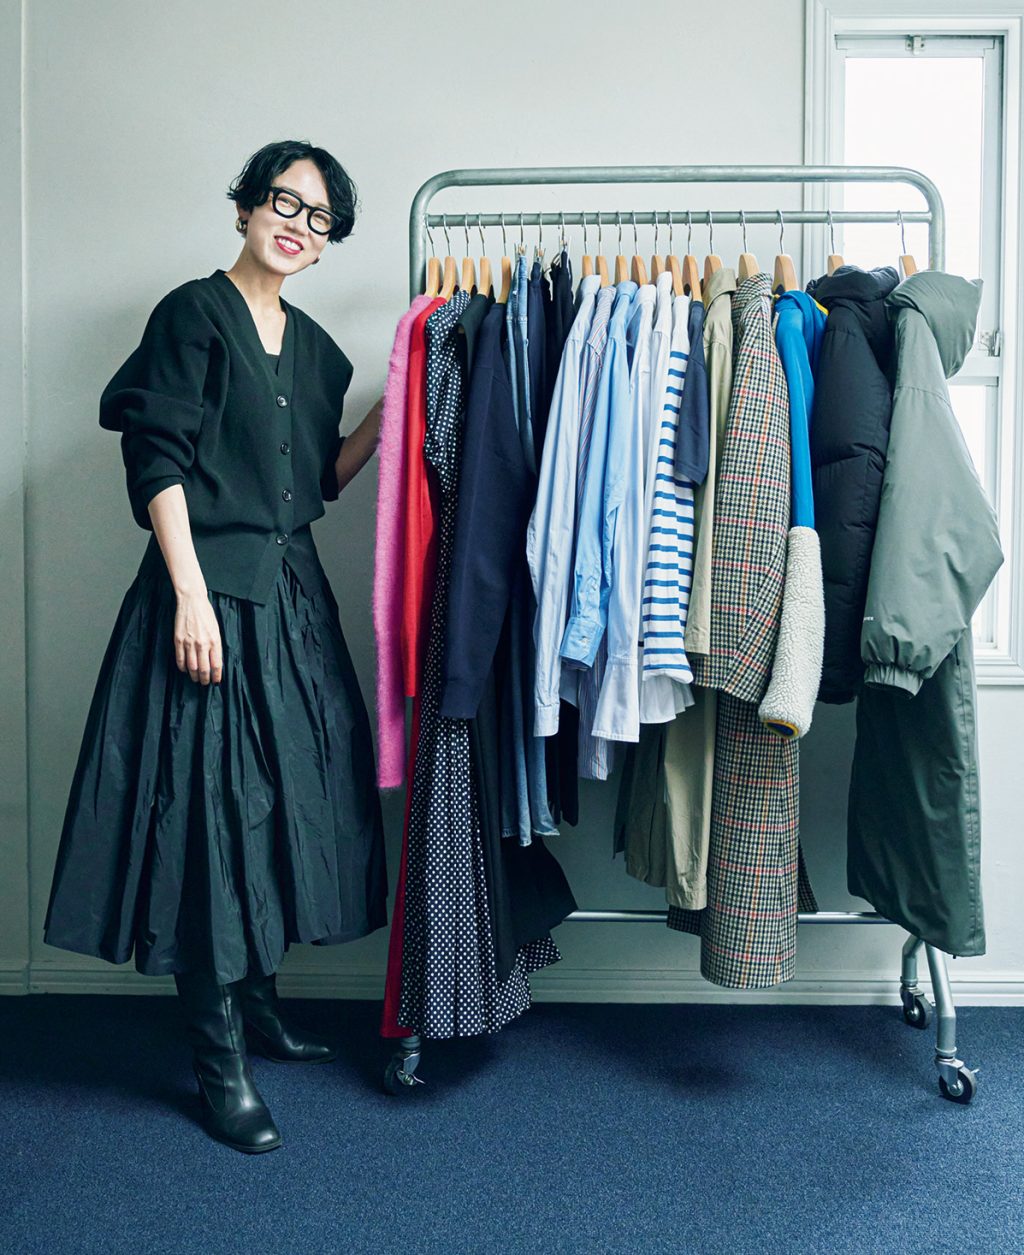 ファッションエディター昼田祥子さんのクローゼット整理と服捨てのコツ